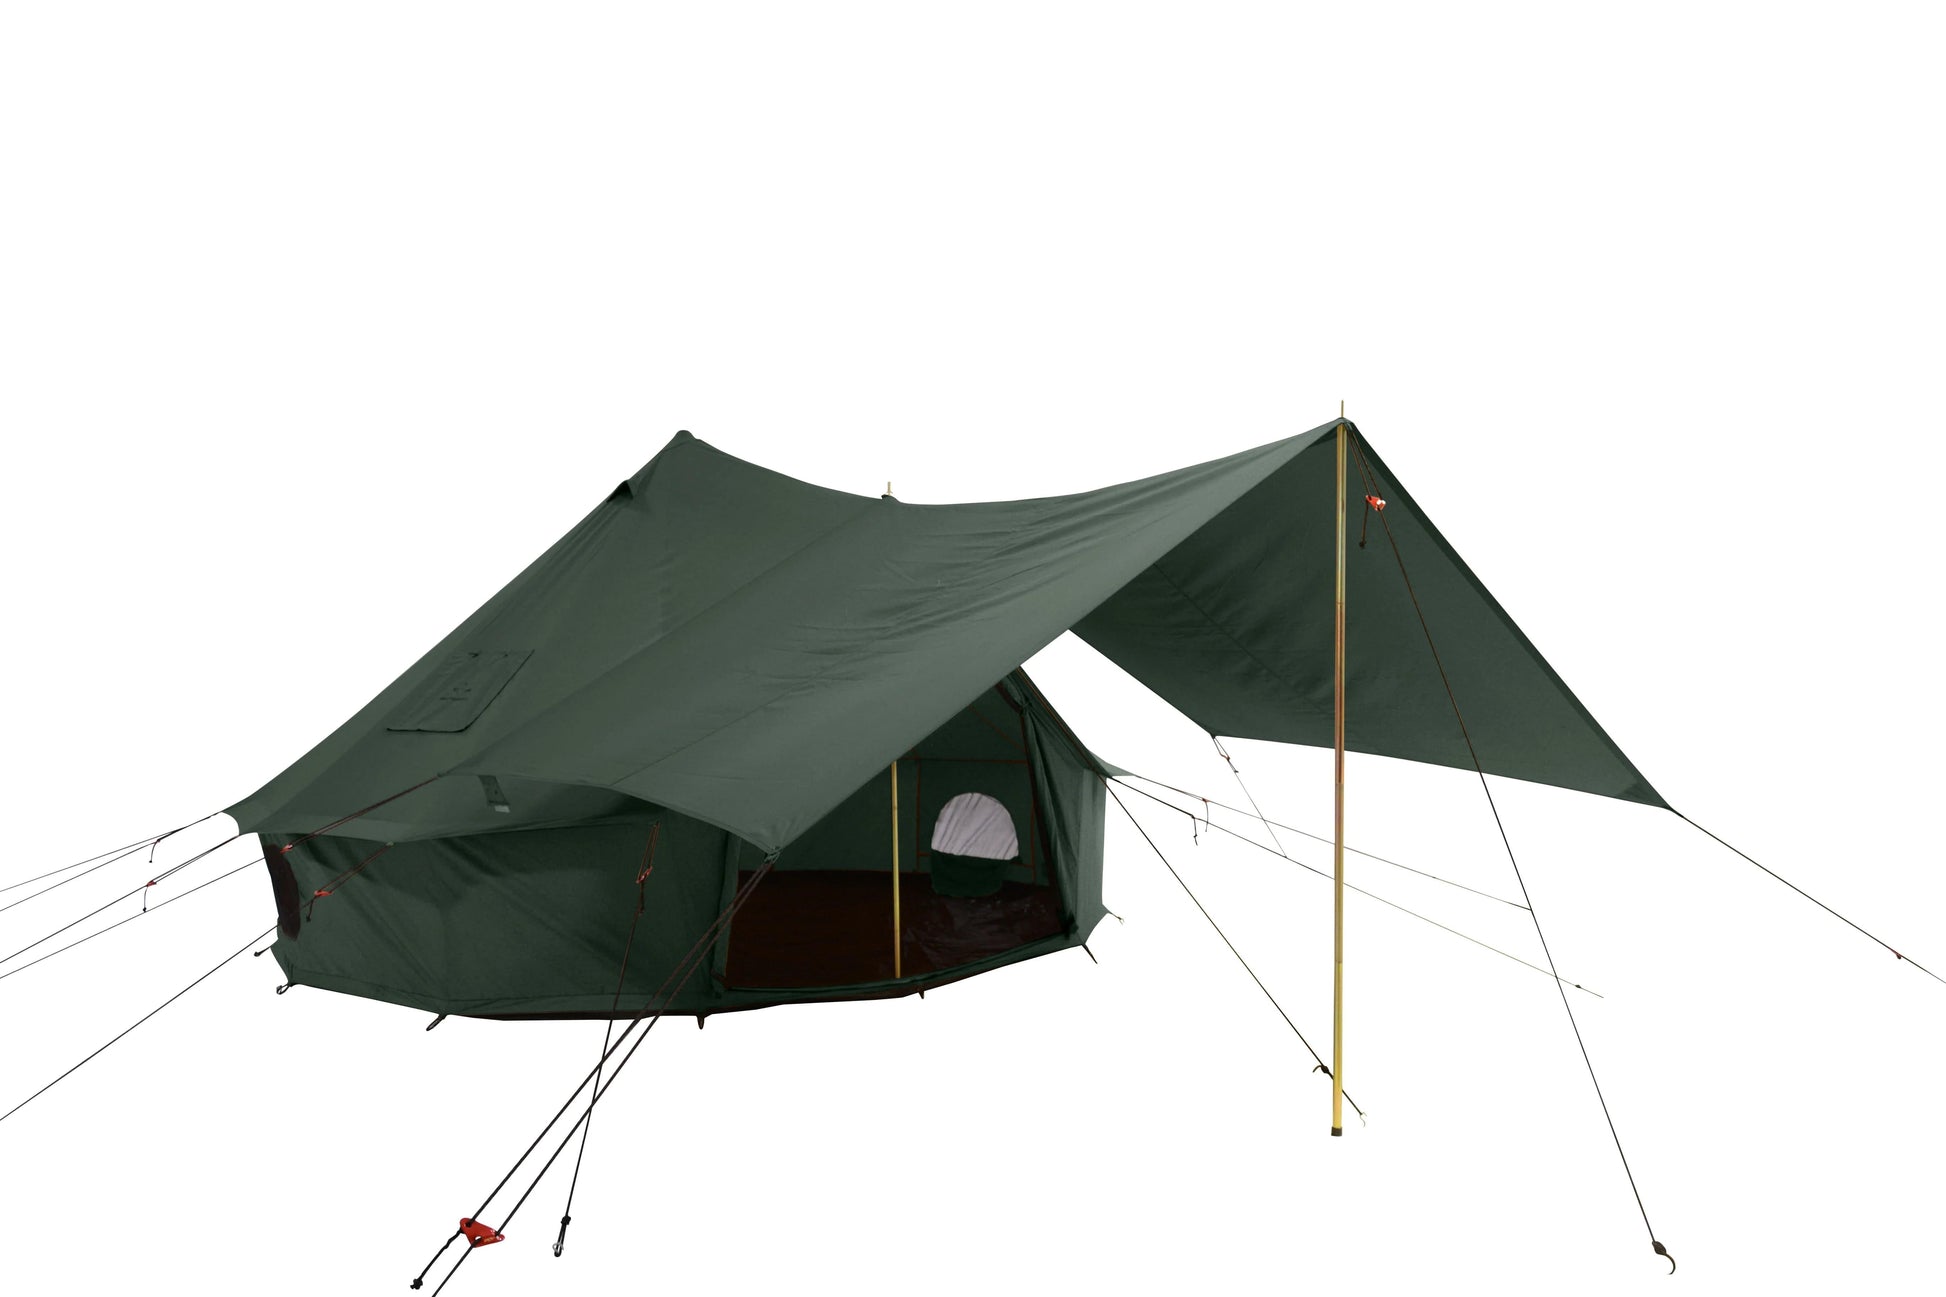 Canvas Tent Repair Kits - Life inTents